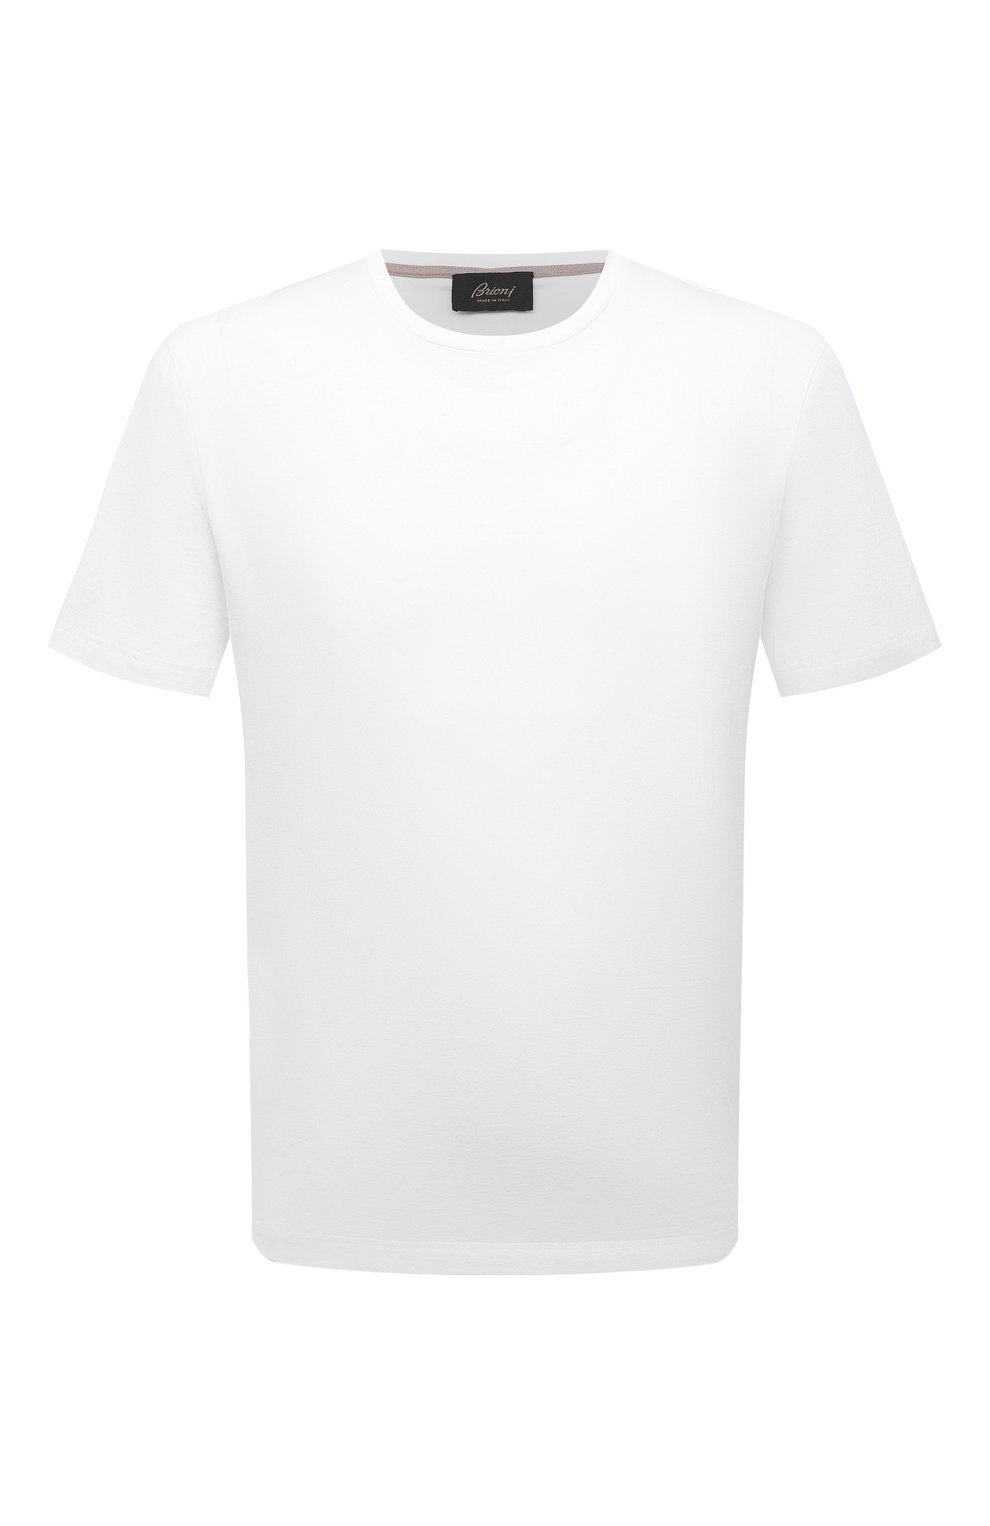 Мужская хлопковая футболка BRIONI белого цвета, арт. UJLA0L/P1613 | Фото 1 (Принт: Без принта; Рукава: Короткие; Длина (для топов): Стандартные; Материал внешний: Хлопок; Стили: Кэжуэл)